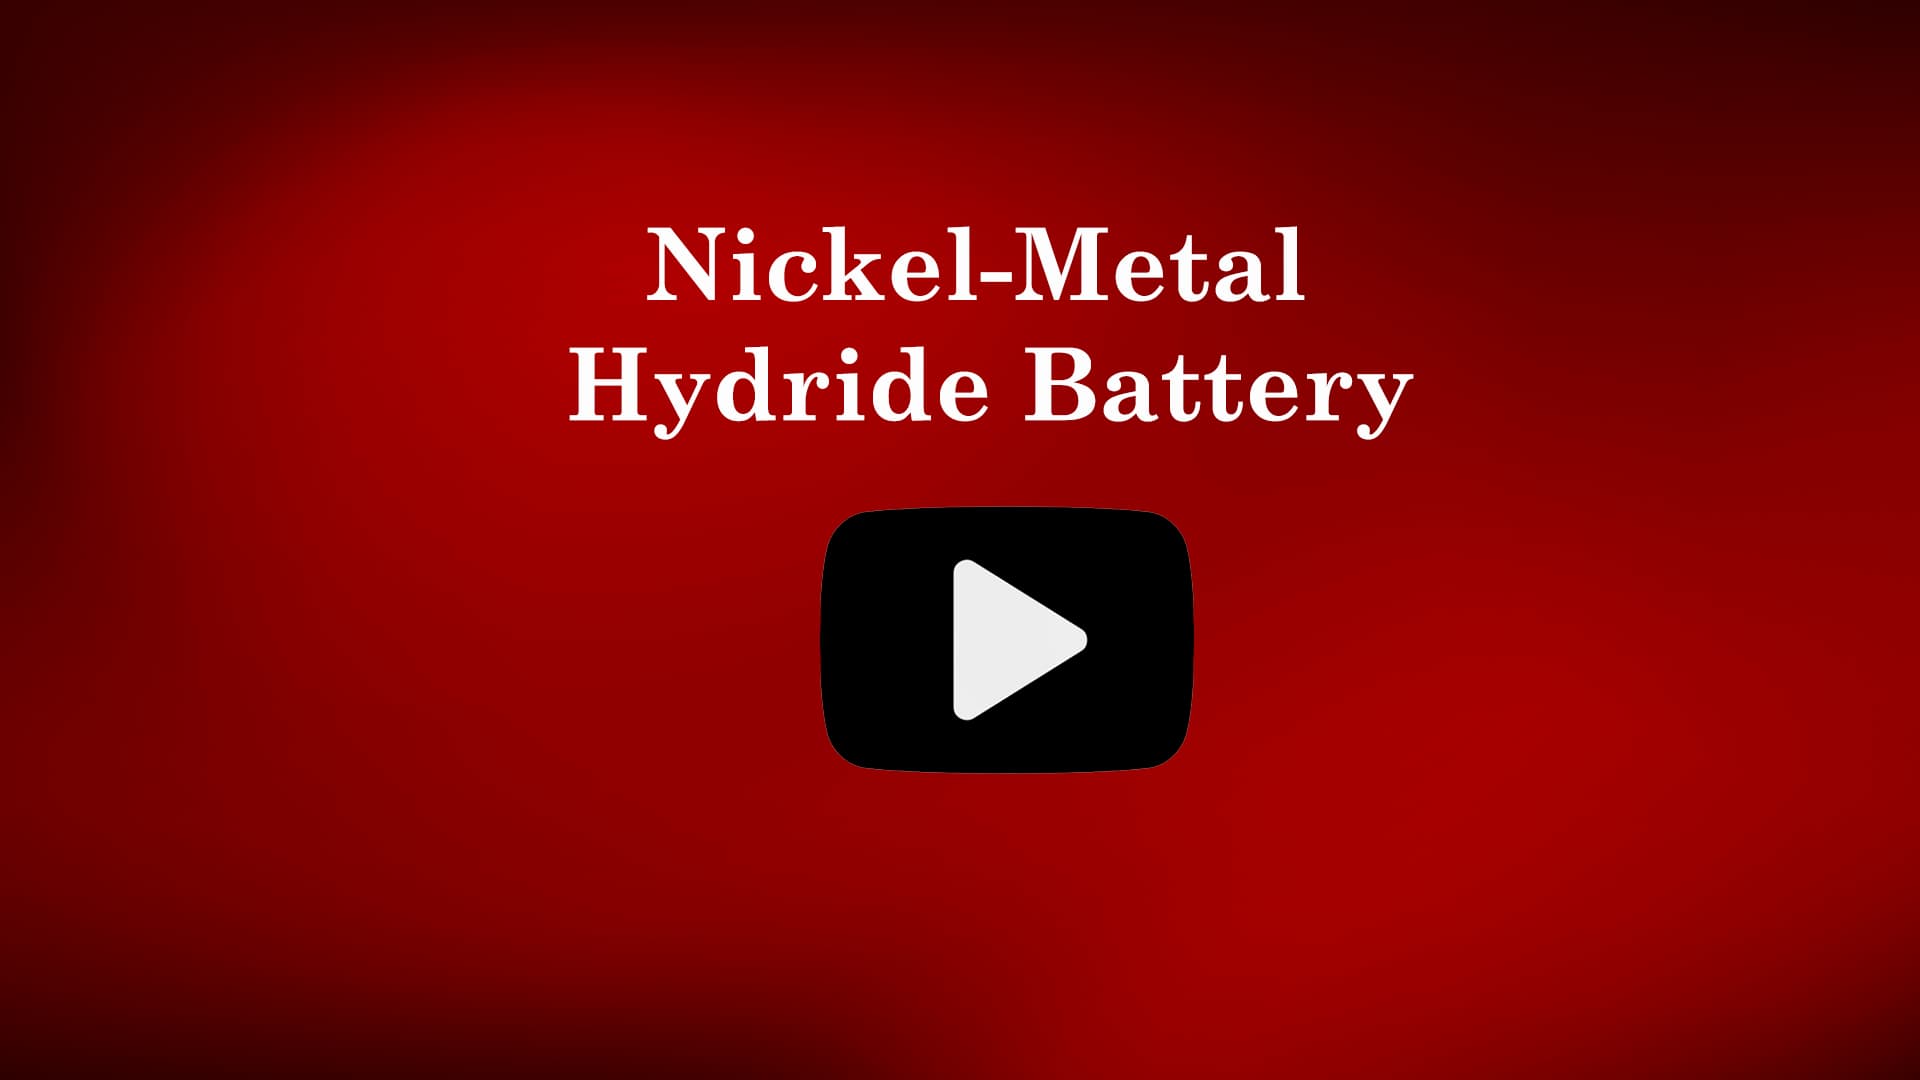 Nickel Metal Hydride Battery - Construction & Working | Vtu Engineering Chemistry